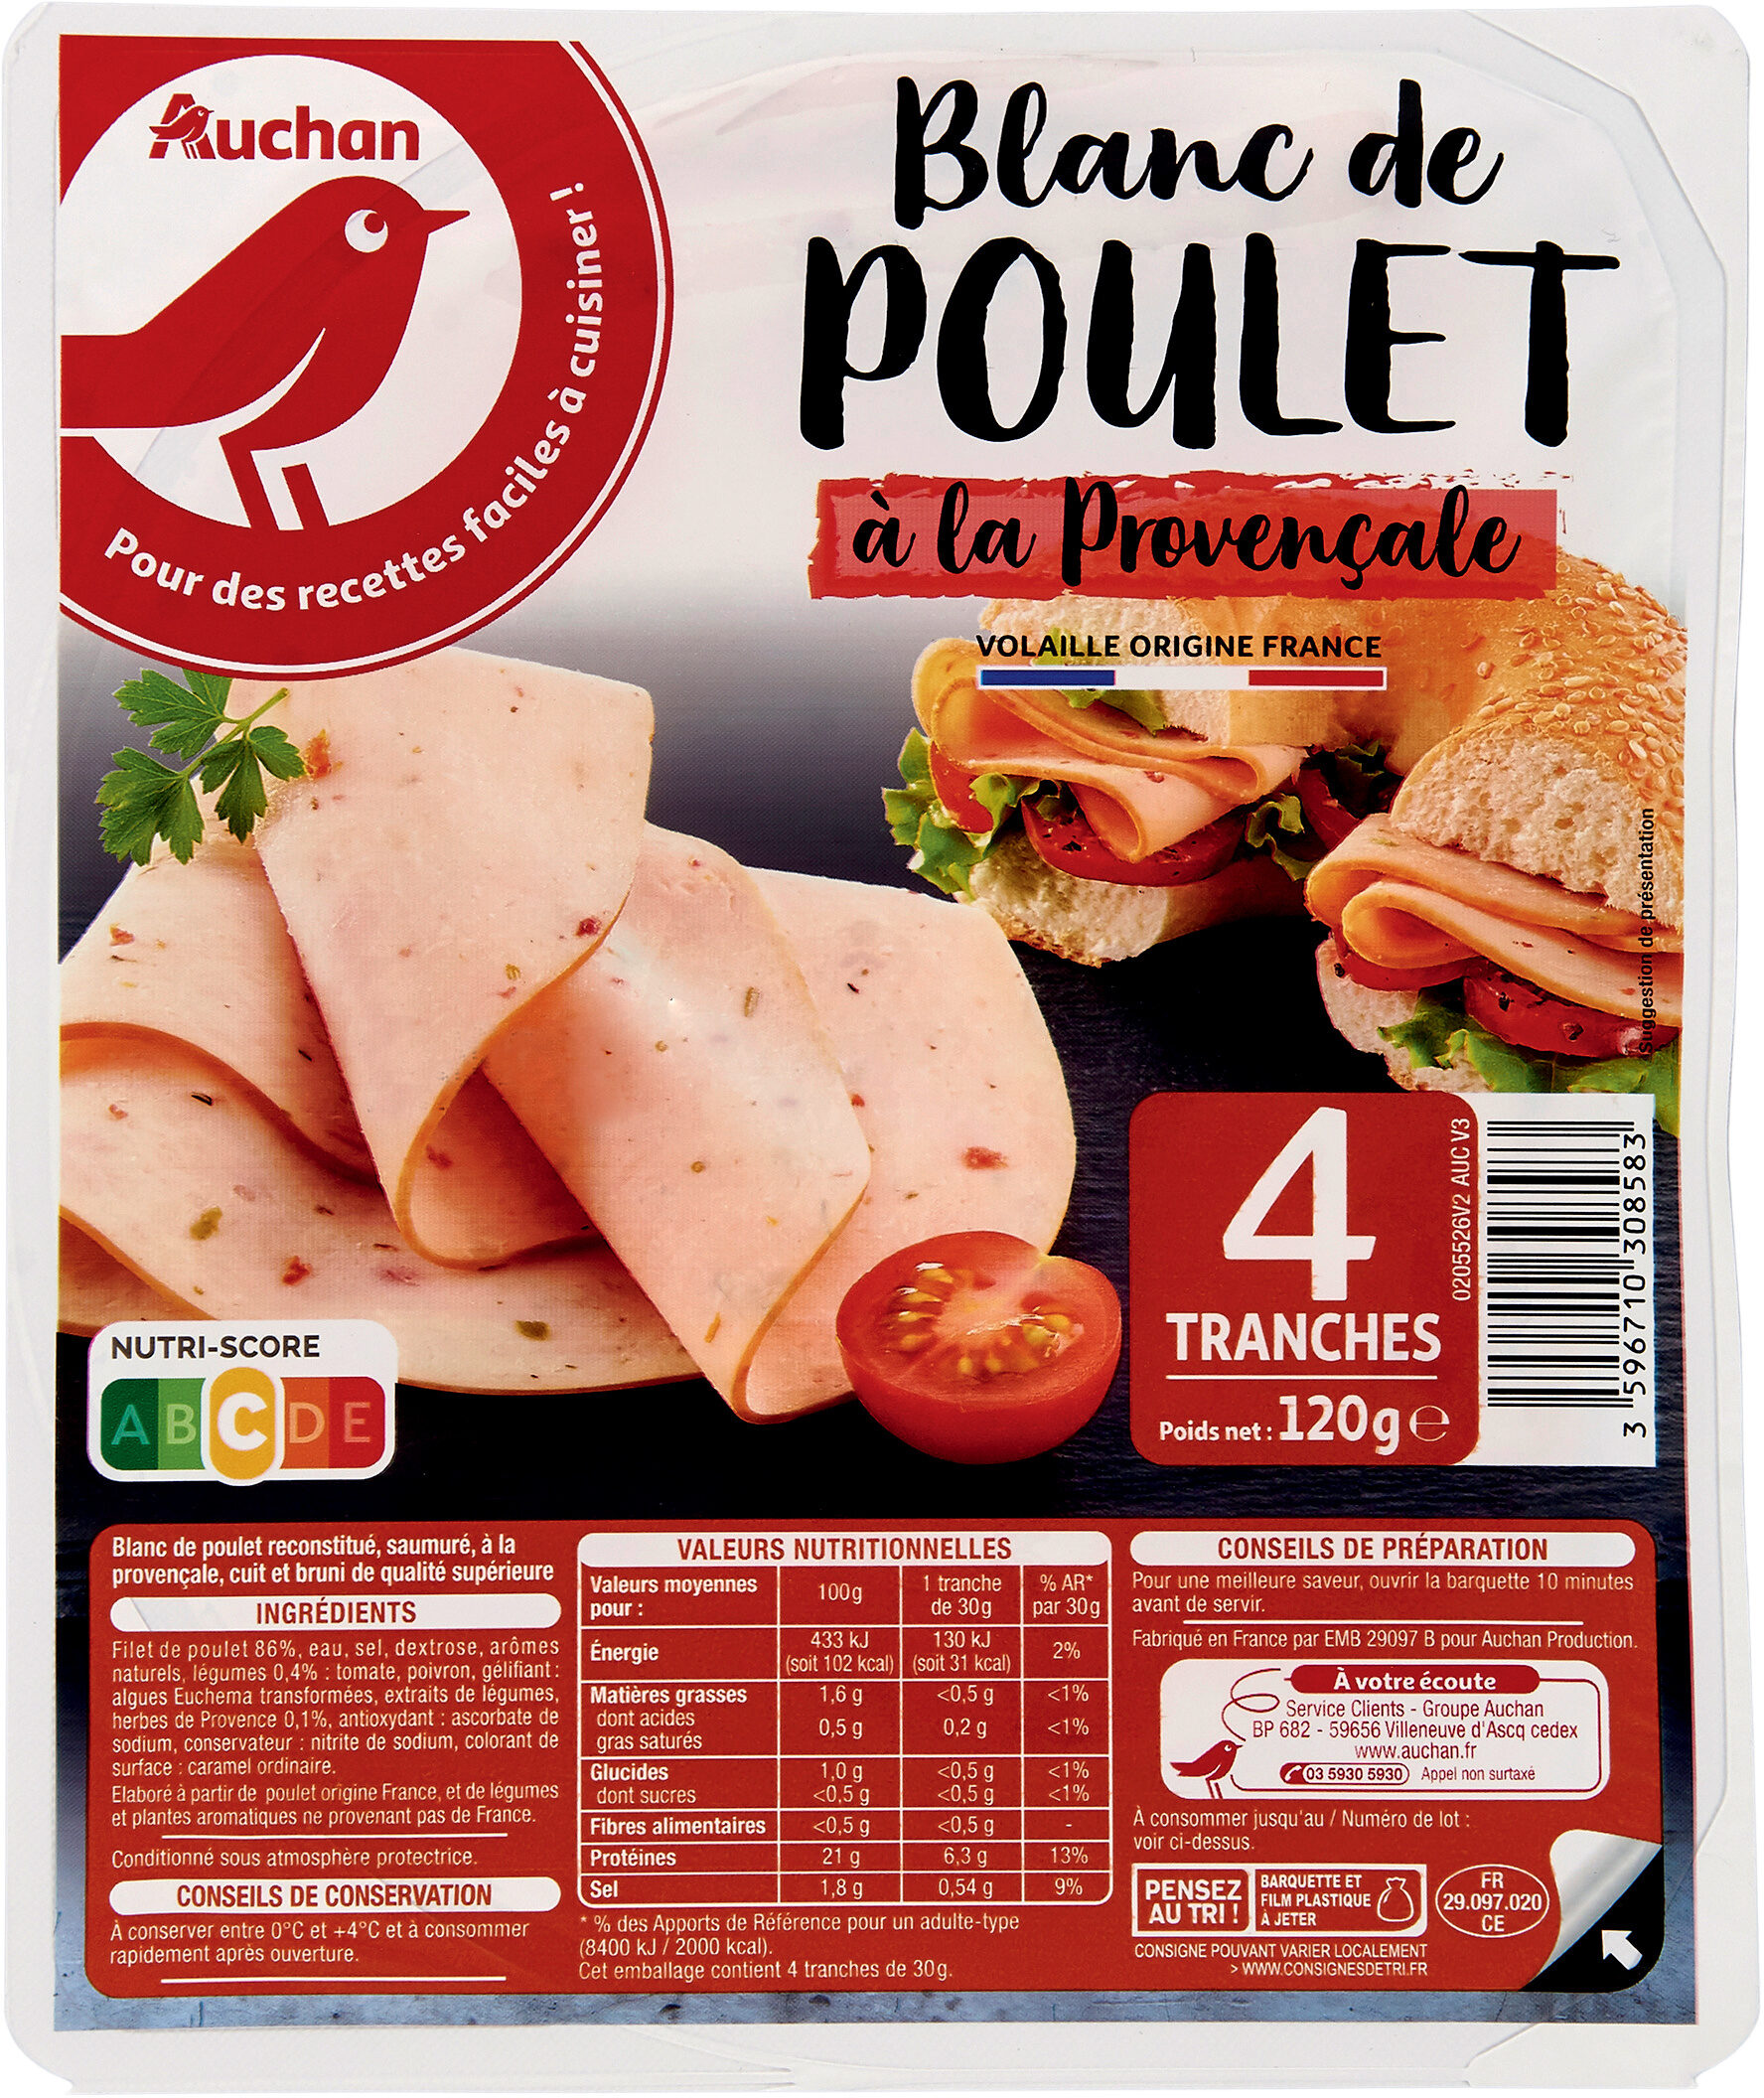 BLANC DE POULET à la Provençale - Product - fr